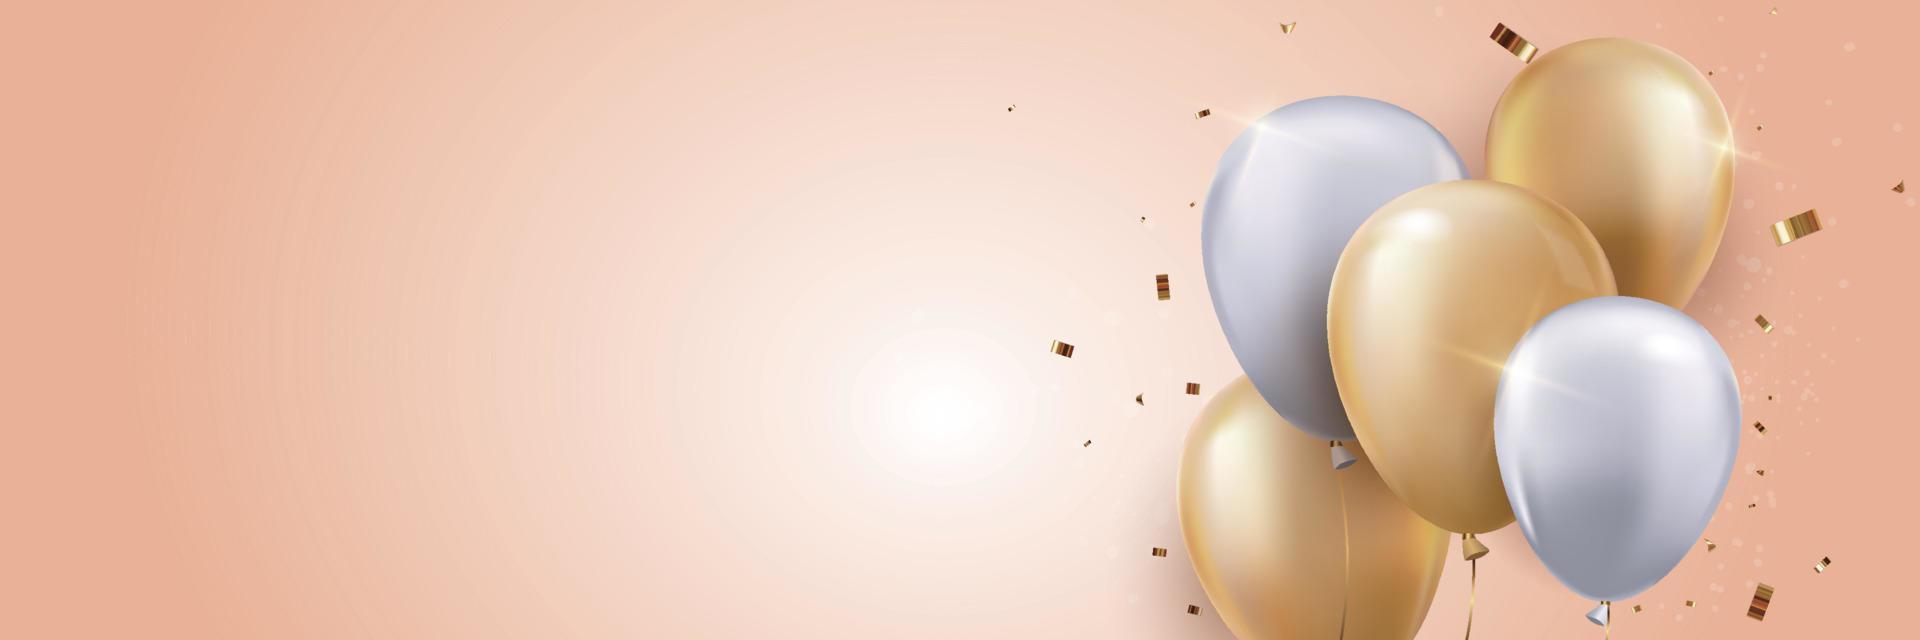 3d luftballons hintergrund mit konfetti und bändern. feier, produktpräsentation zeigen kosmetisches produkt podium vektor